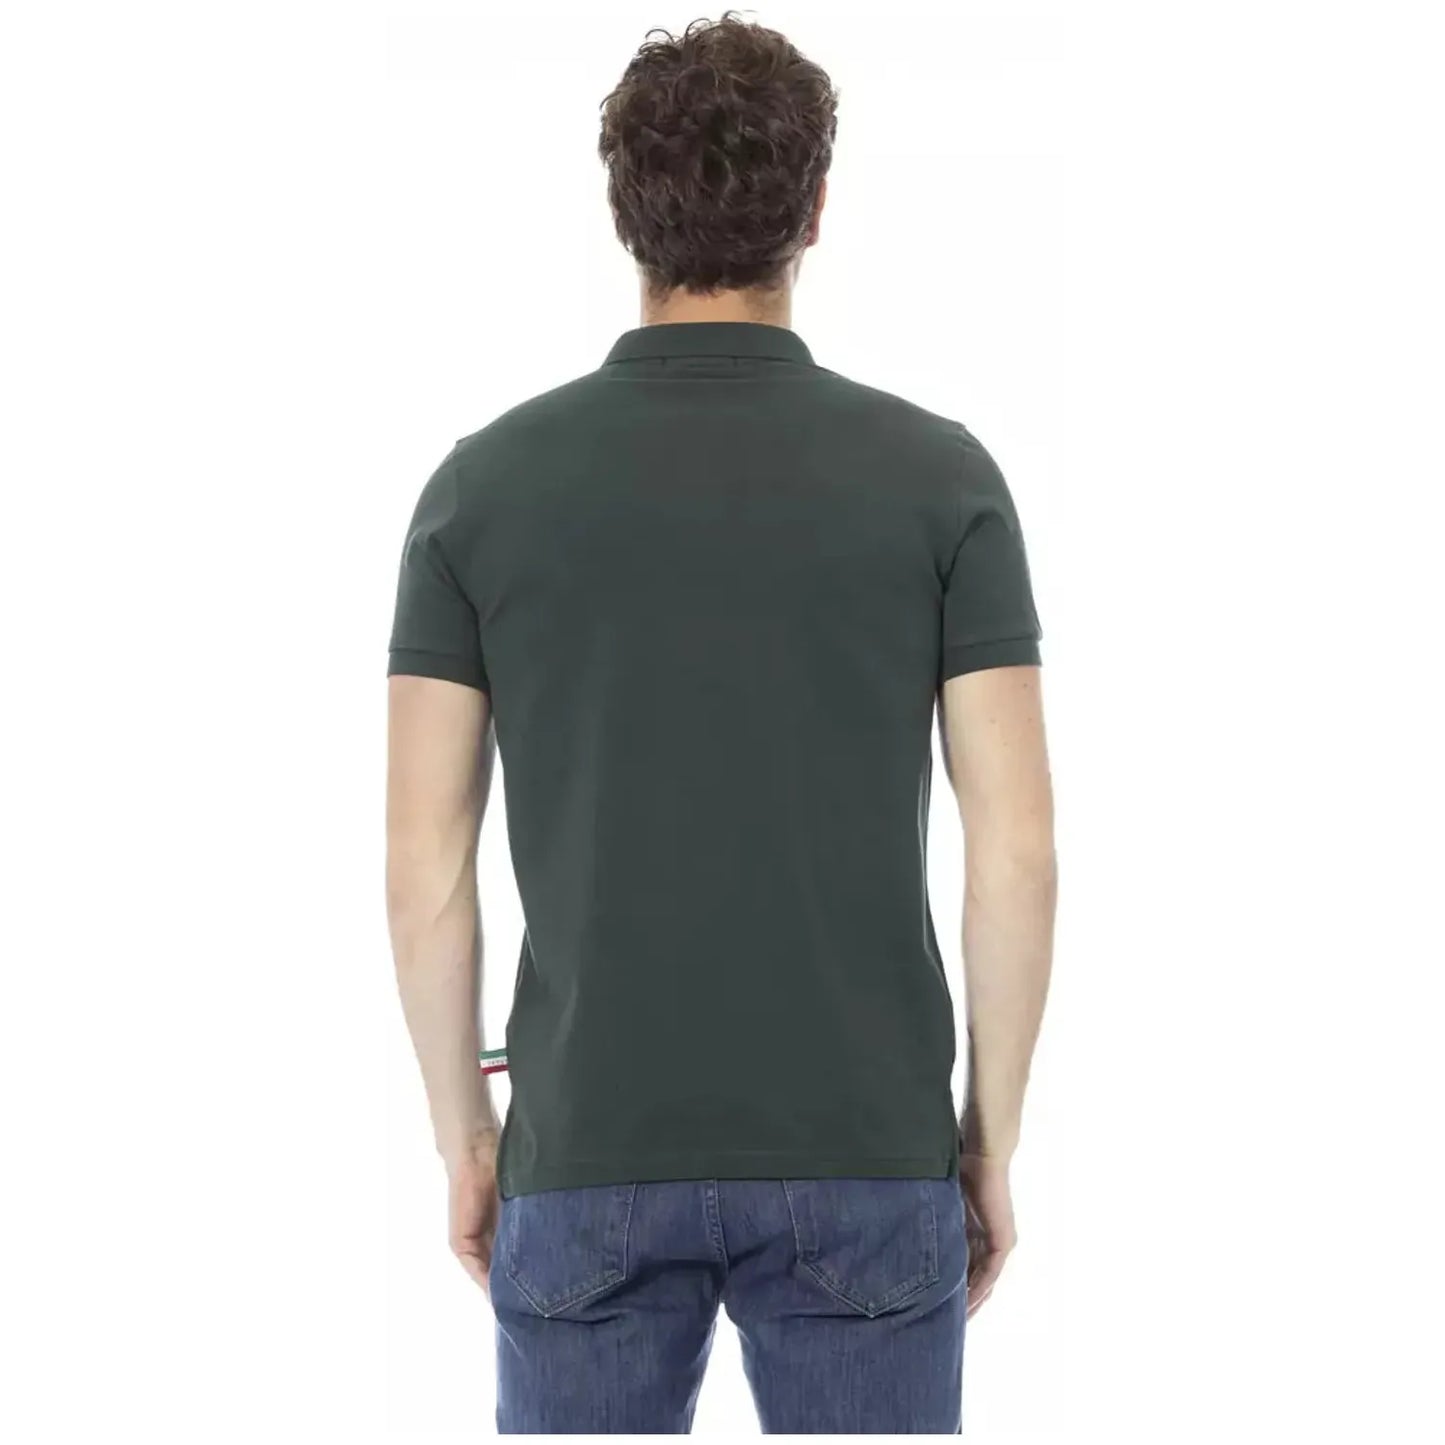 Baldinini Trend Chic Embroidered Cotton Polo Shirt in Green green-cotton-polo-shirt-17 product-23207-64870238-31-9666f565-b2f.webp